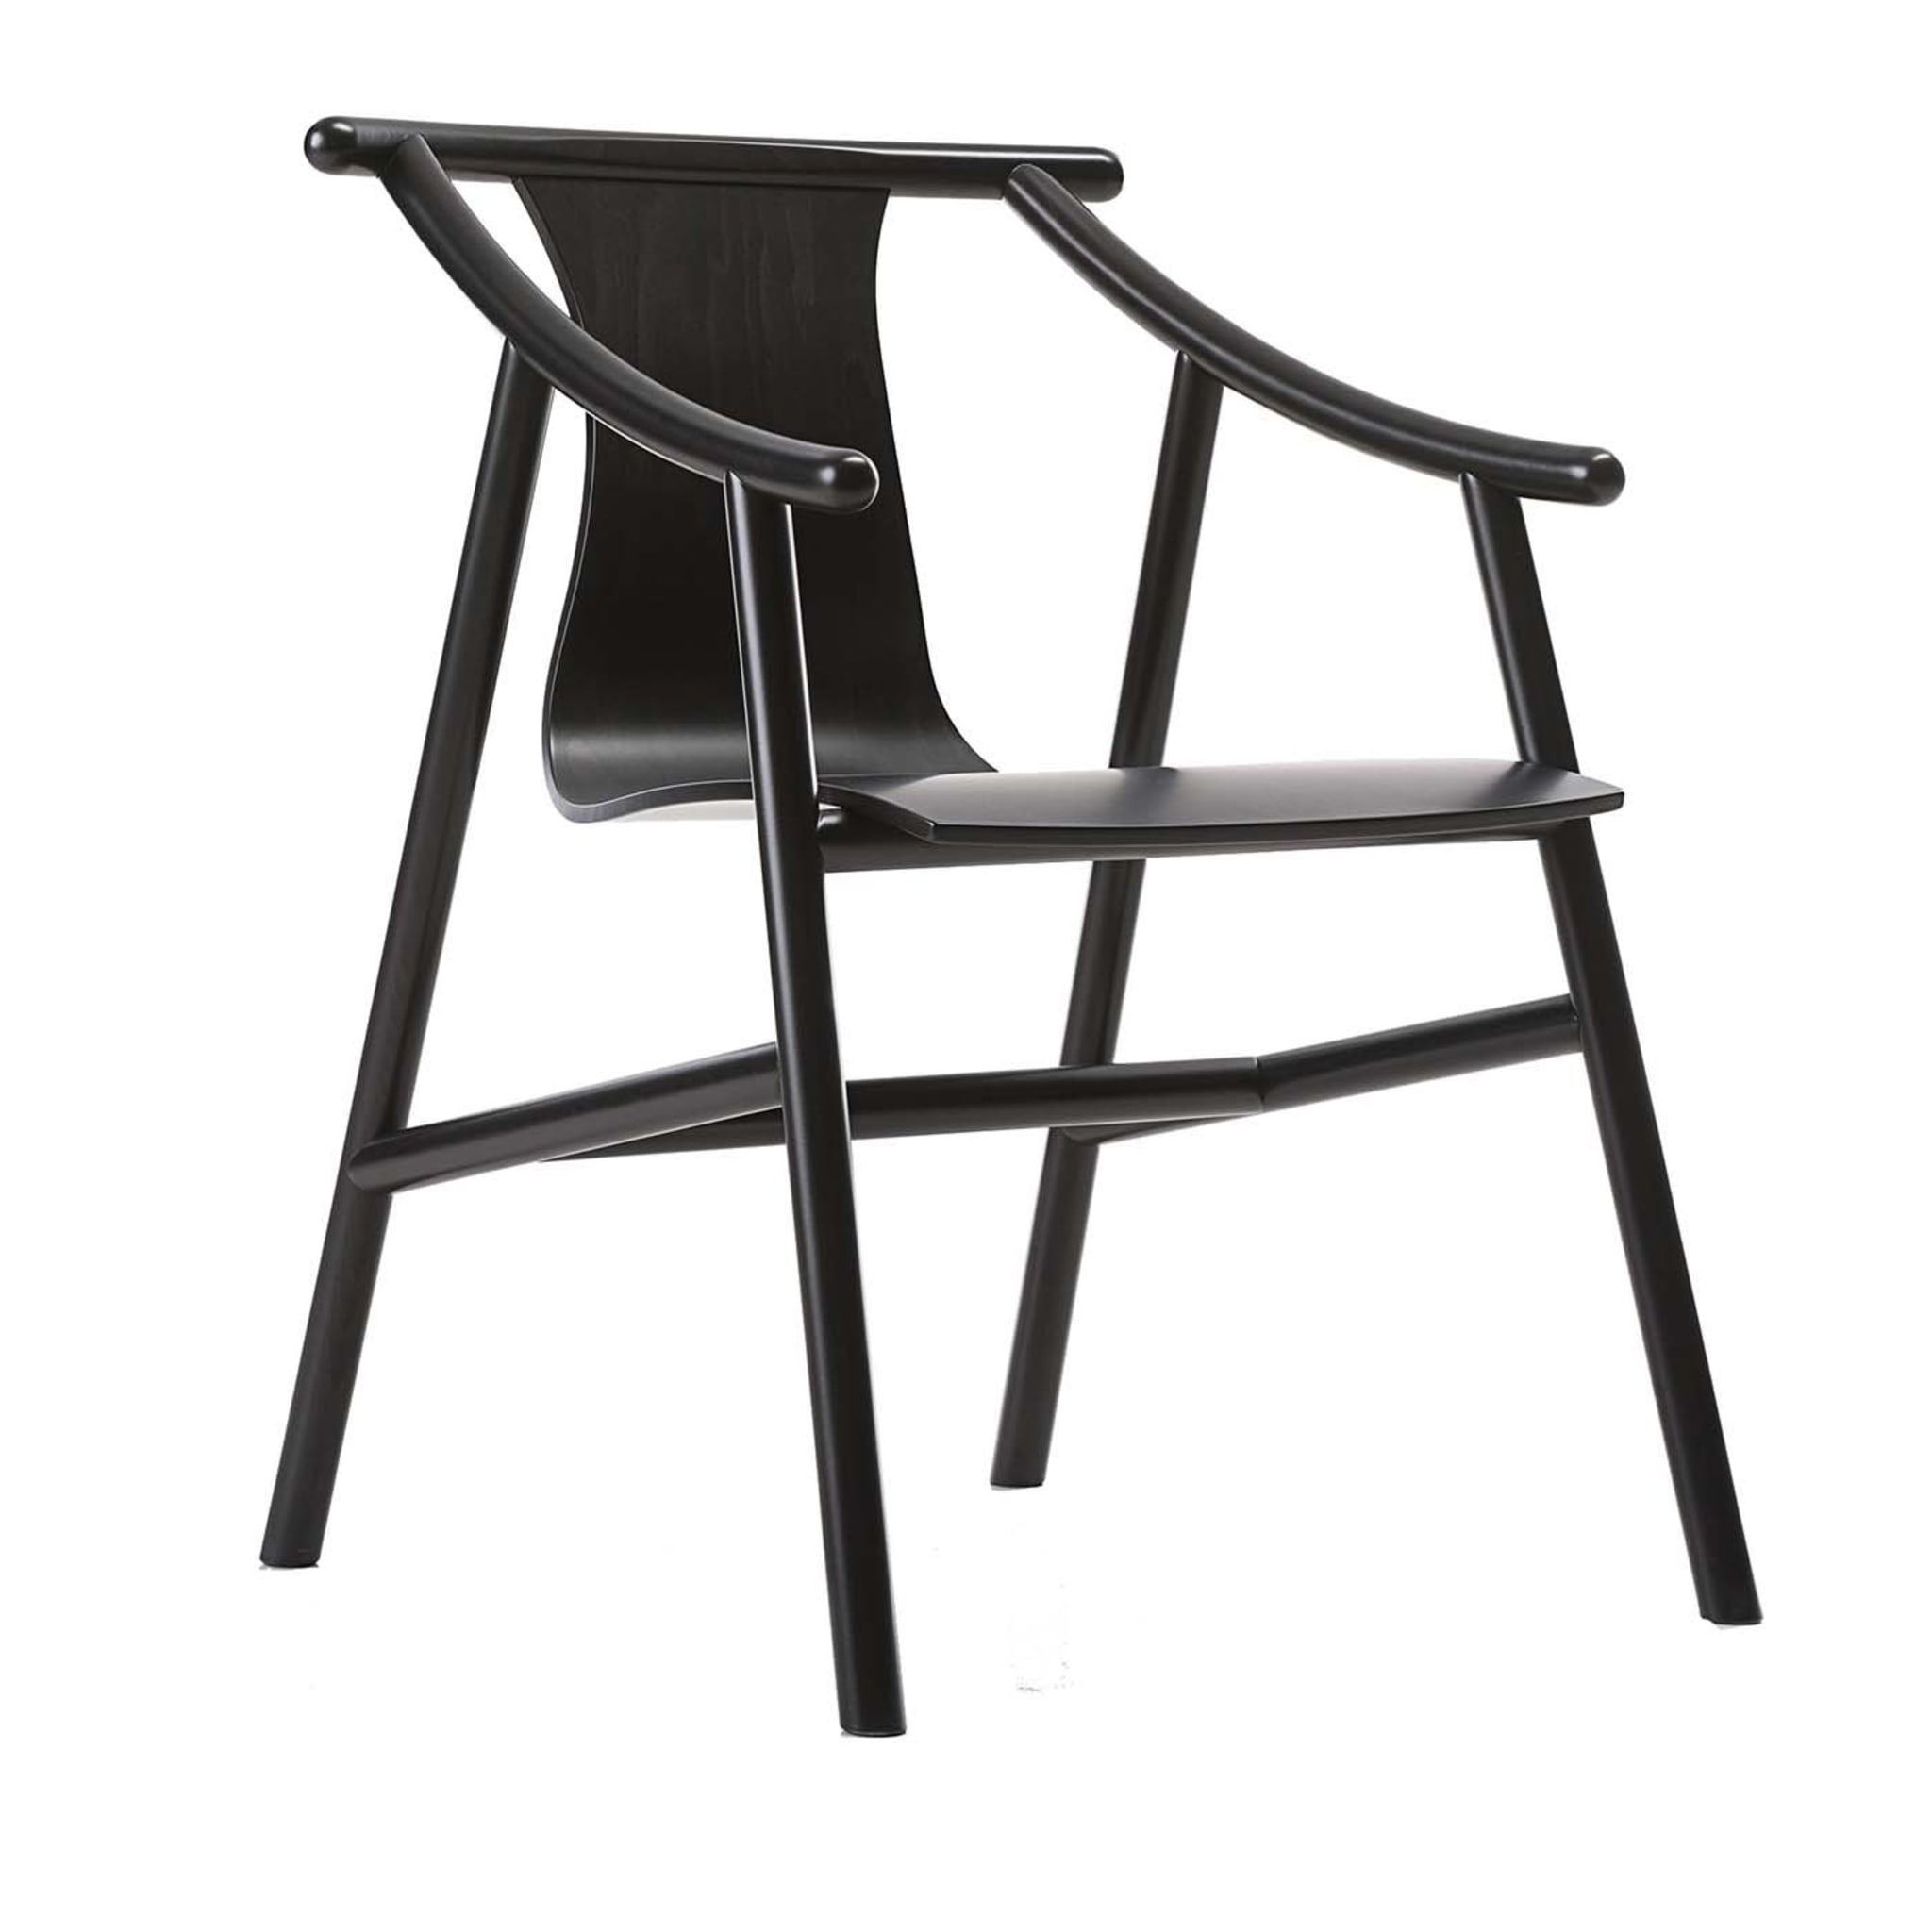 Magistretti 03 01 Black Chair by Vico Magistretti - Main view